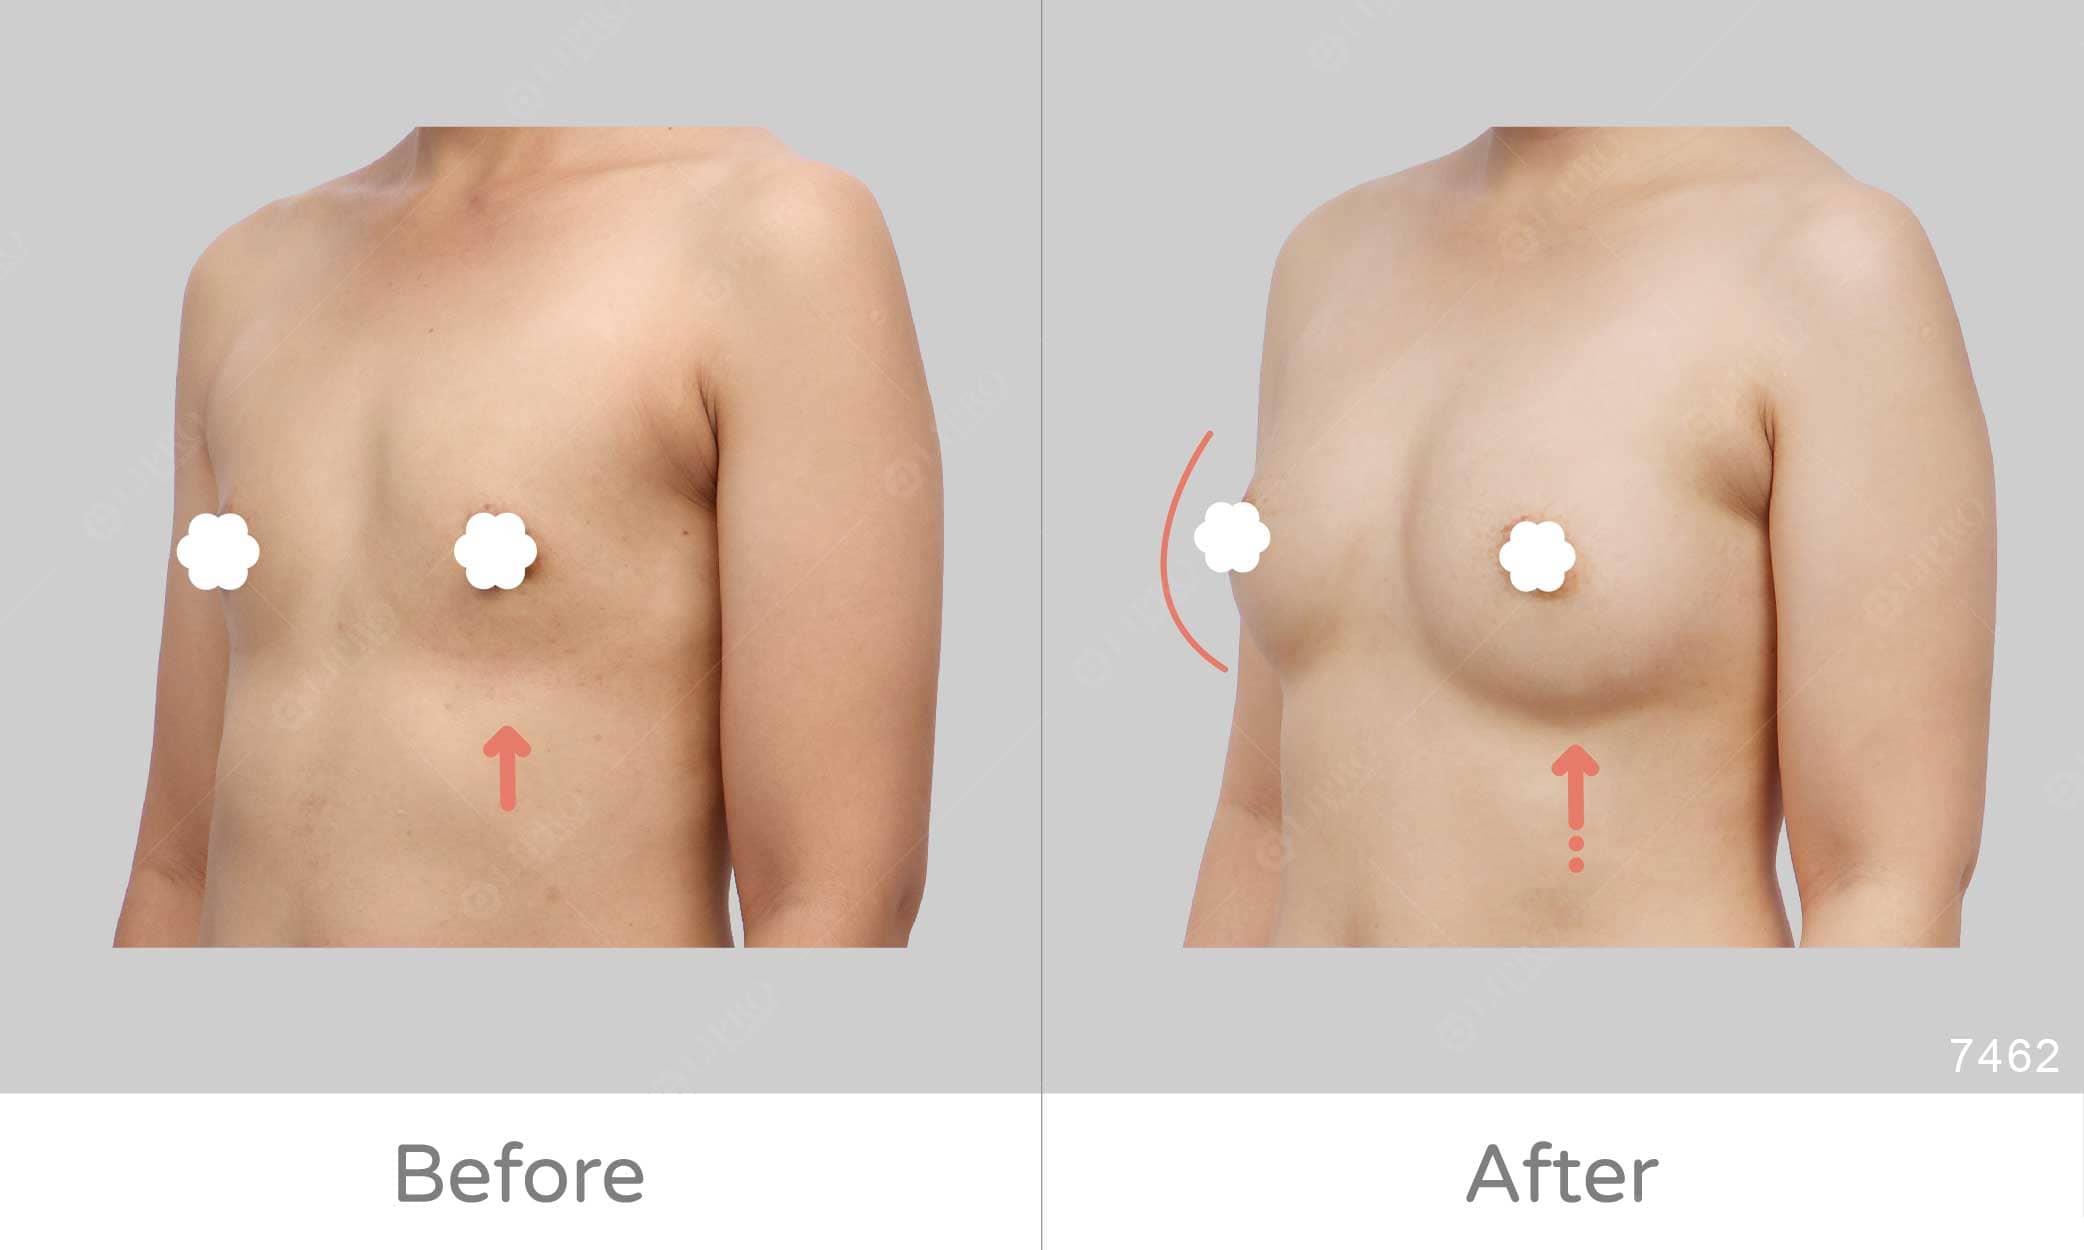 個案先天胸部條件較不足，經過麗波團隊全方位的協助，達到超乎個案預期的胸部補脂案例